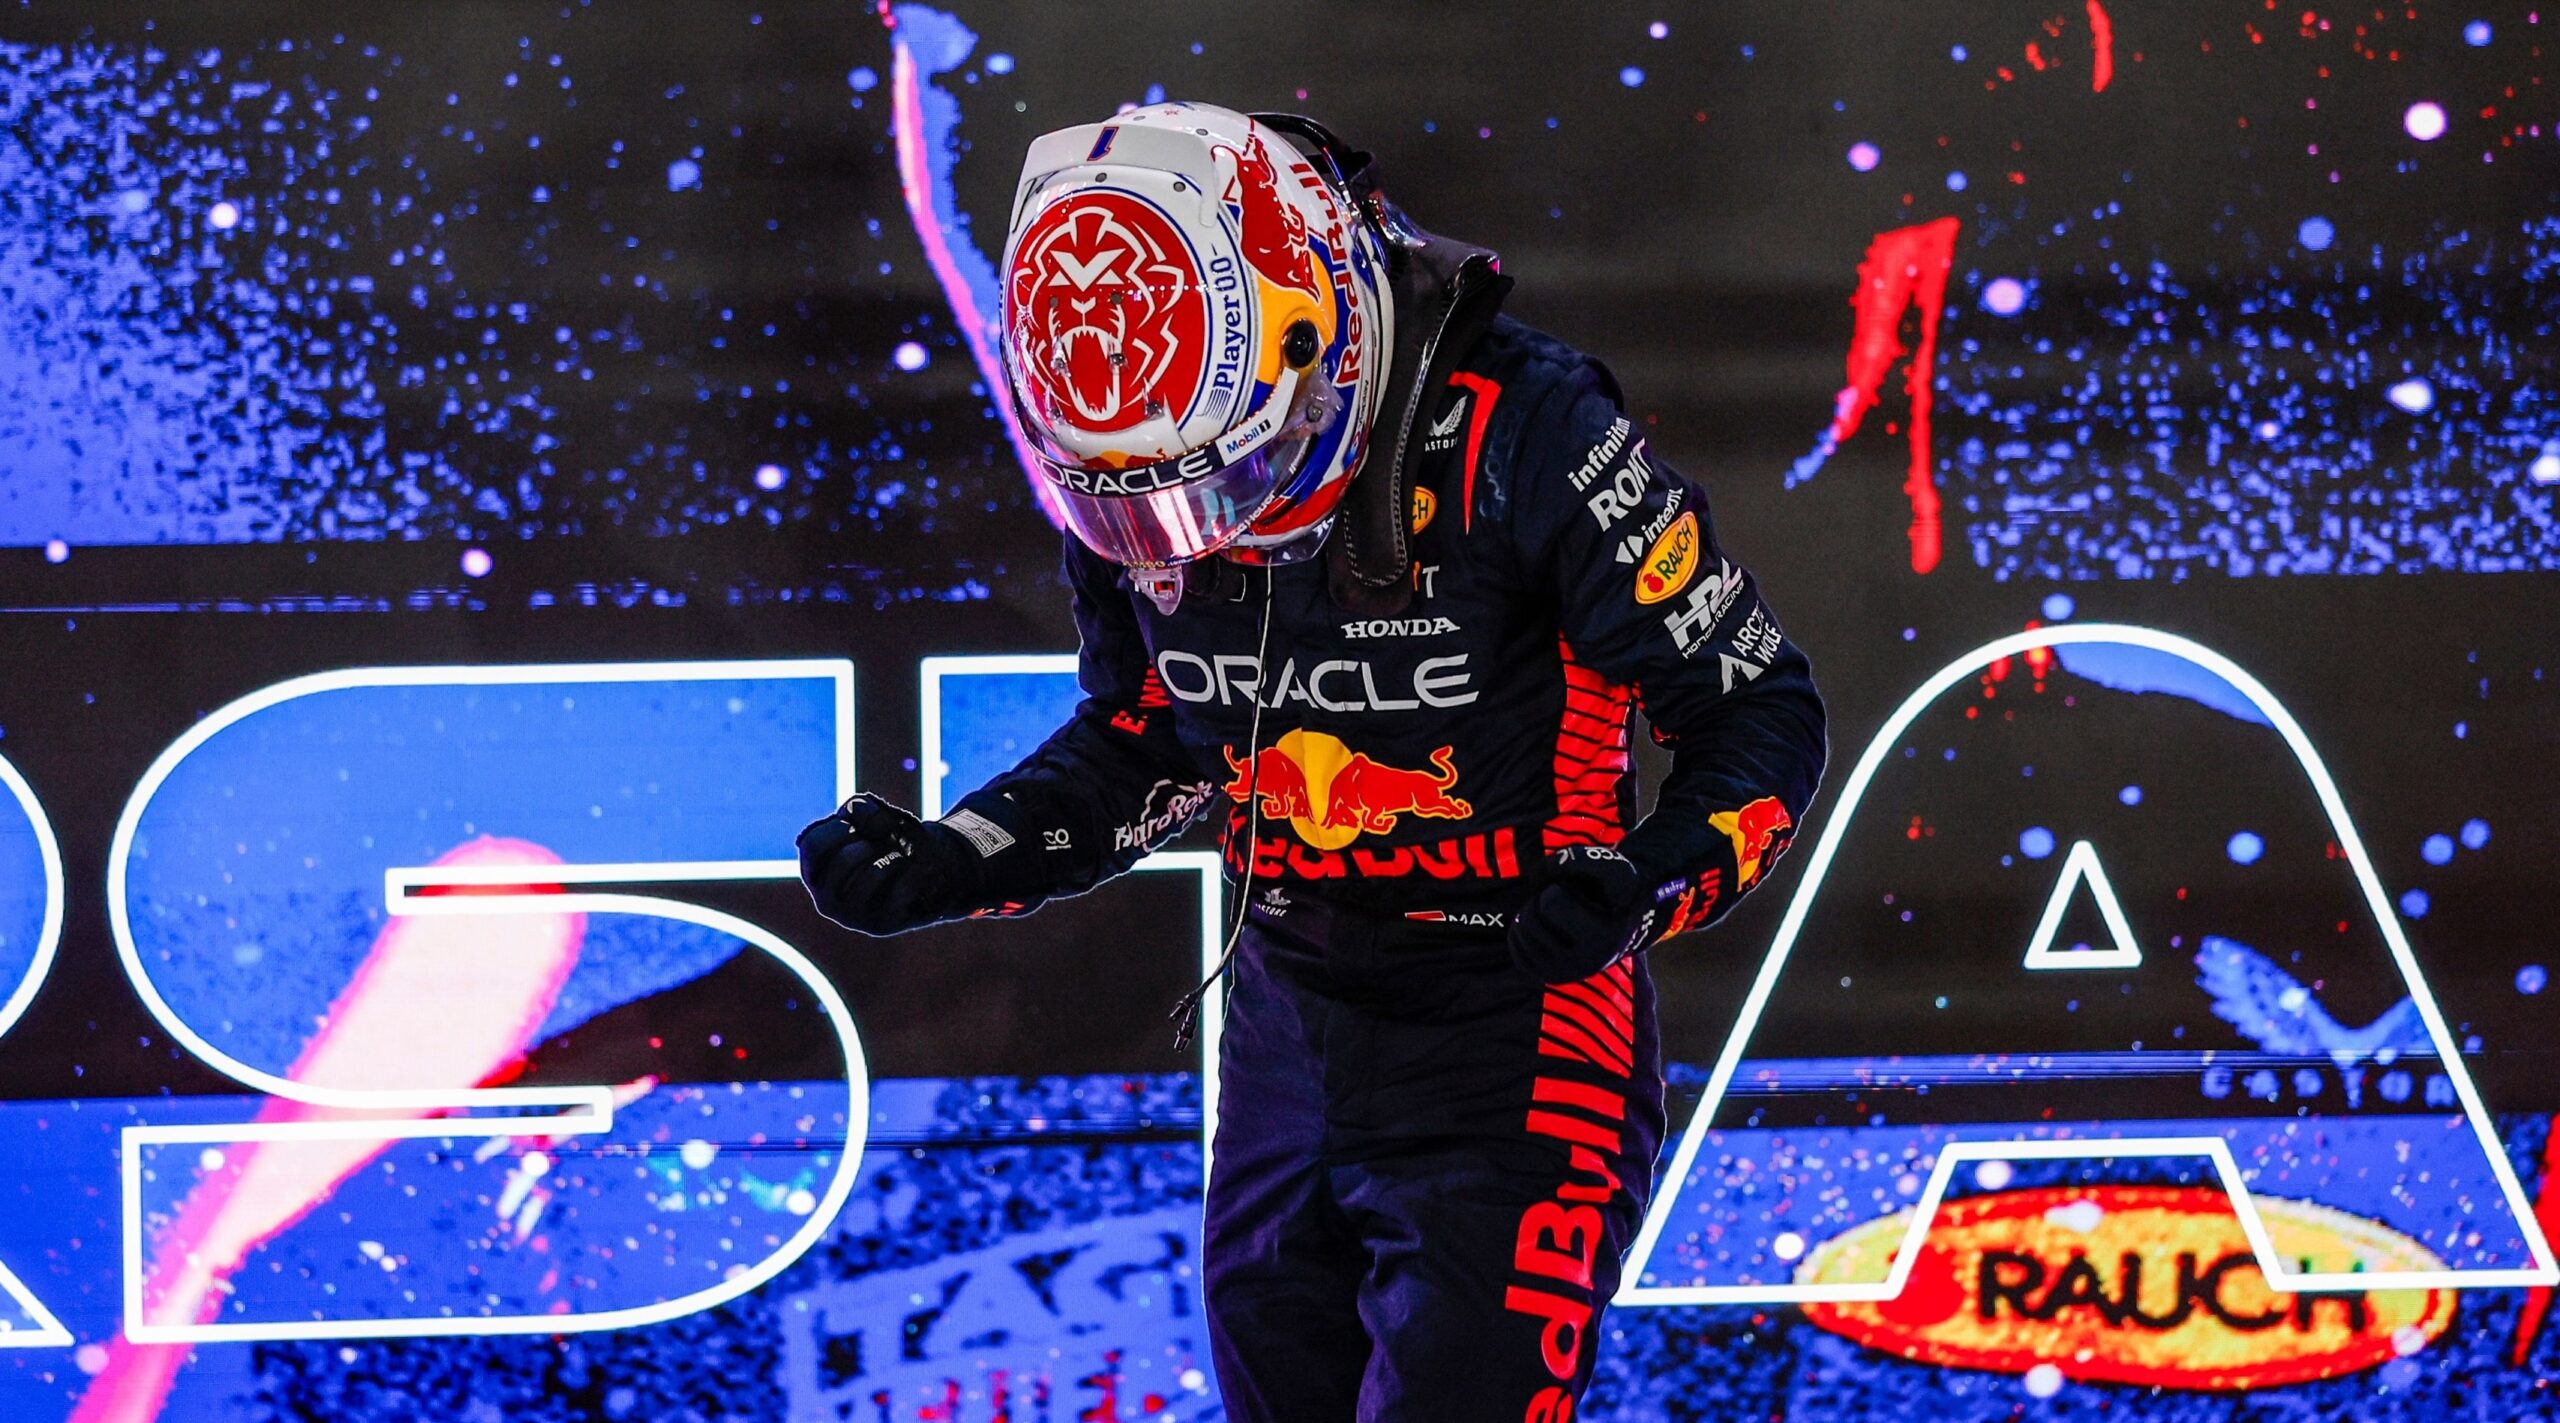 Max Verstappen, pe o listă selectă în Formula 1: ”Cred că următorii ani vor fi şi mai buni pentru Max”